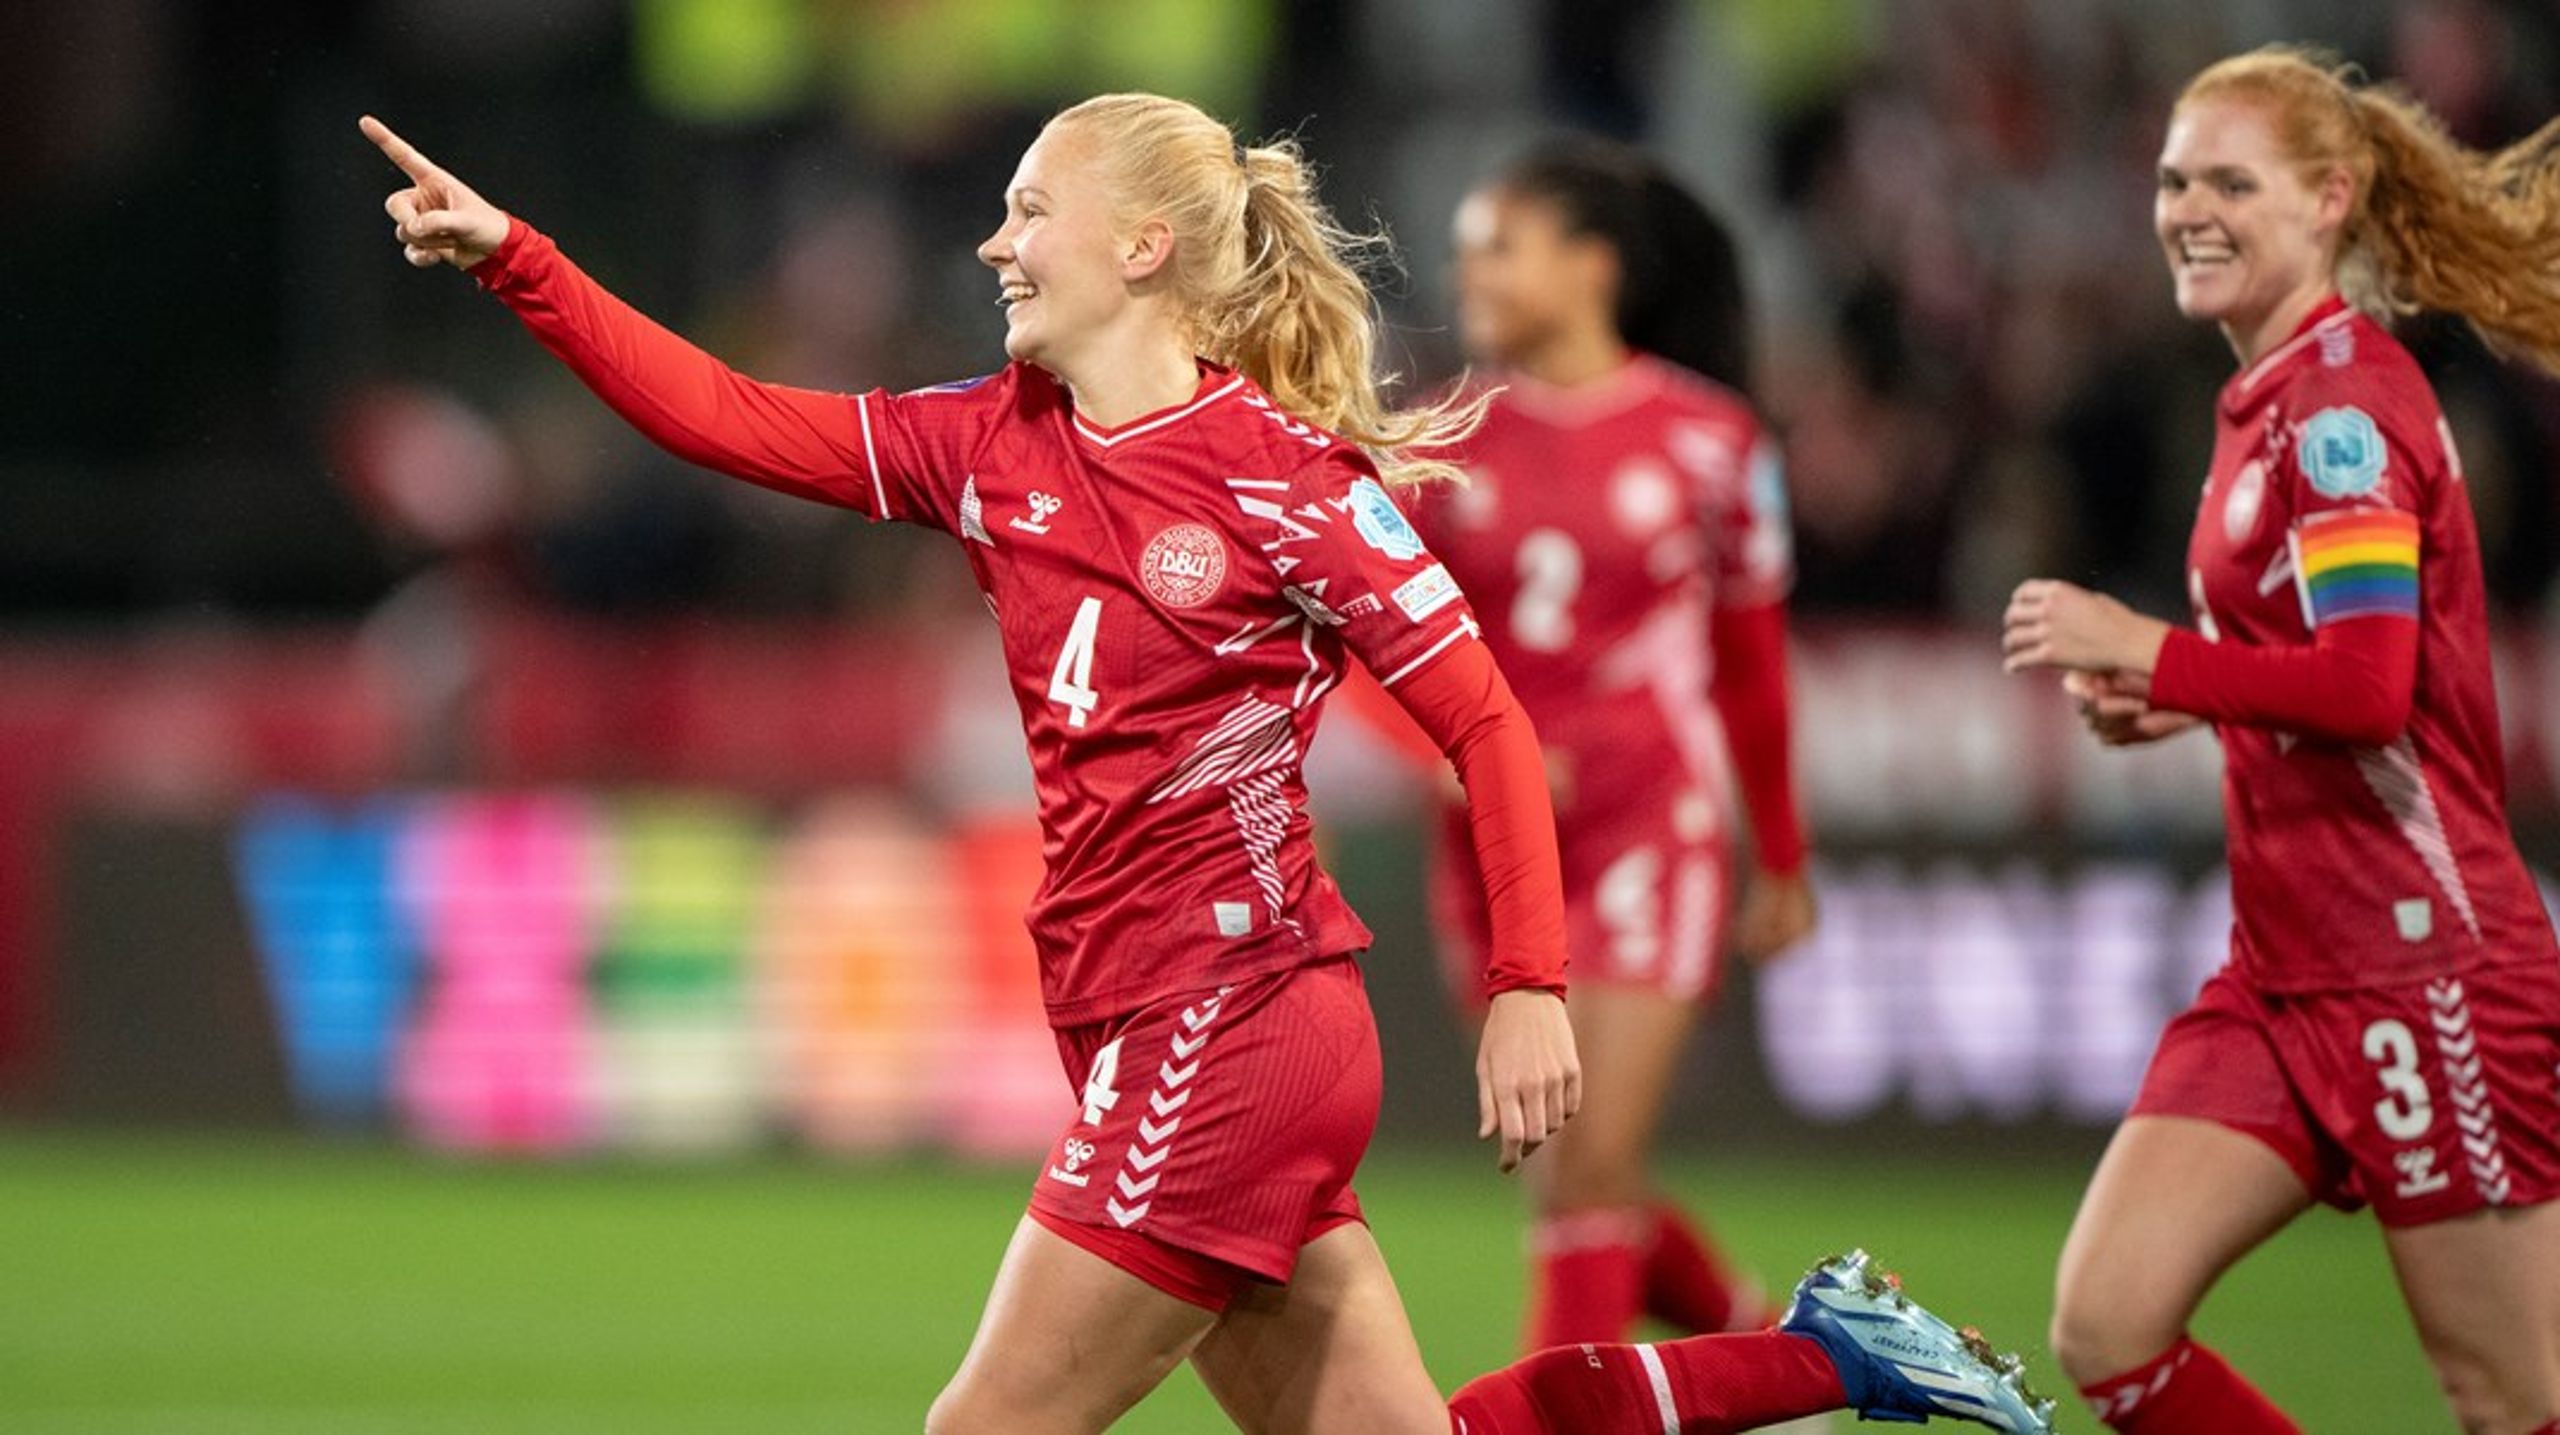 Kvindefodboldens fremmarch er en chance for at udvikle fodbolden og kulturen rundt om sporten gennem god, moderne ledelse, skriver Jesper Olsen.